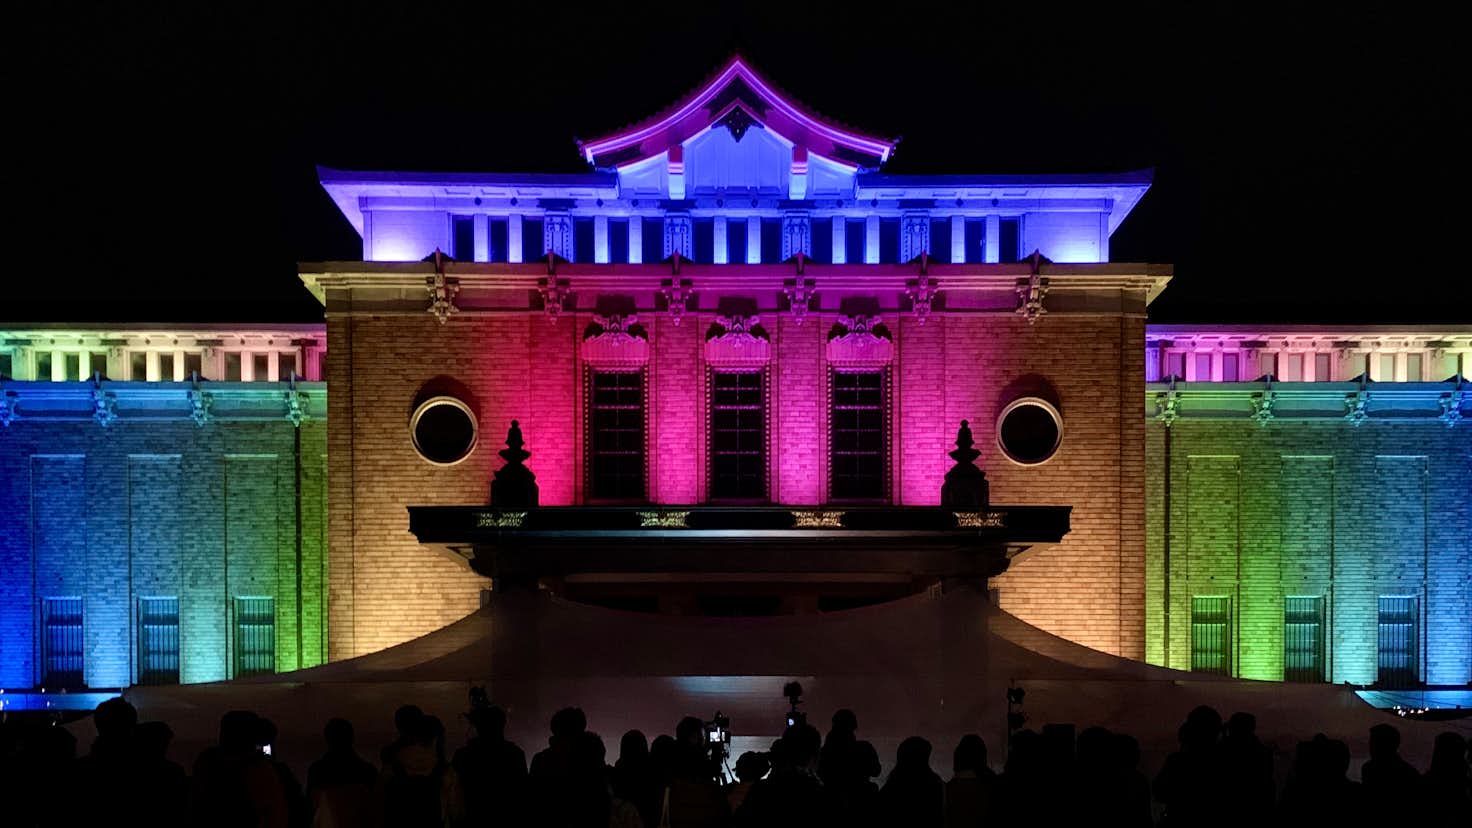 京都市京セラ美術館でプレオープンイベント開催 ライトアップで美術館彩る 美術手帖